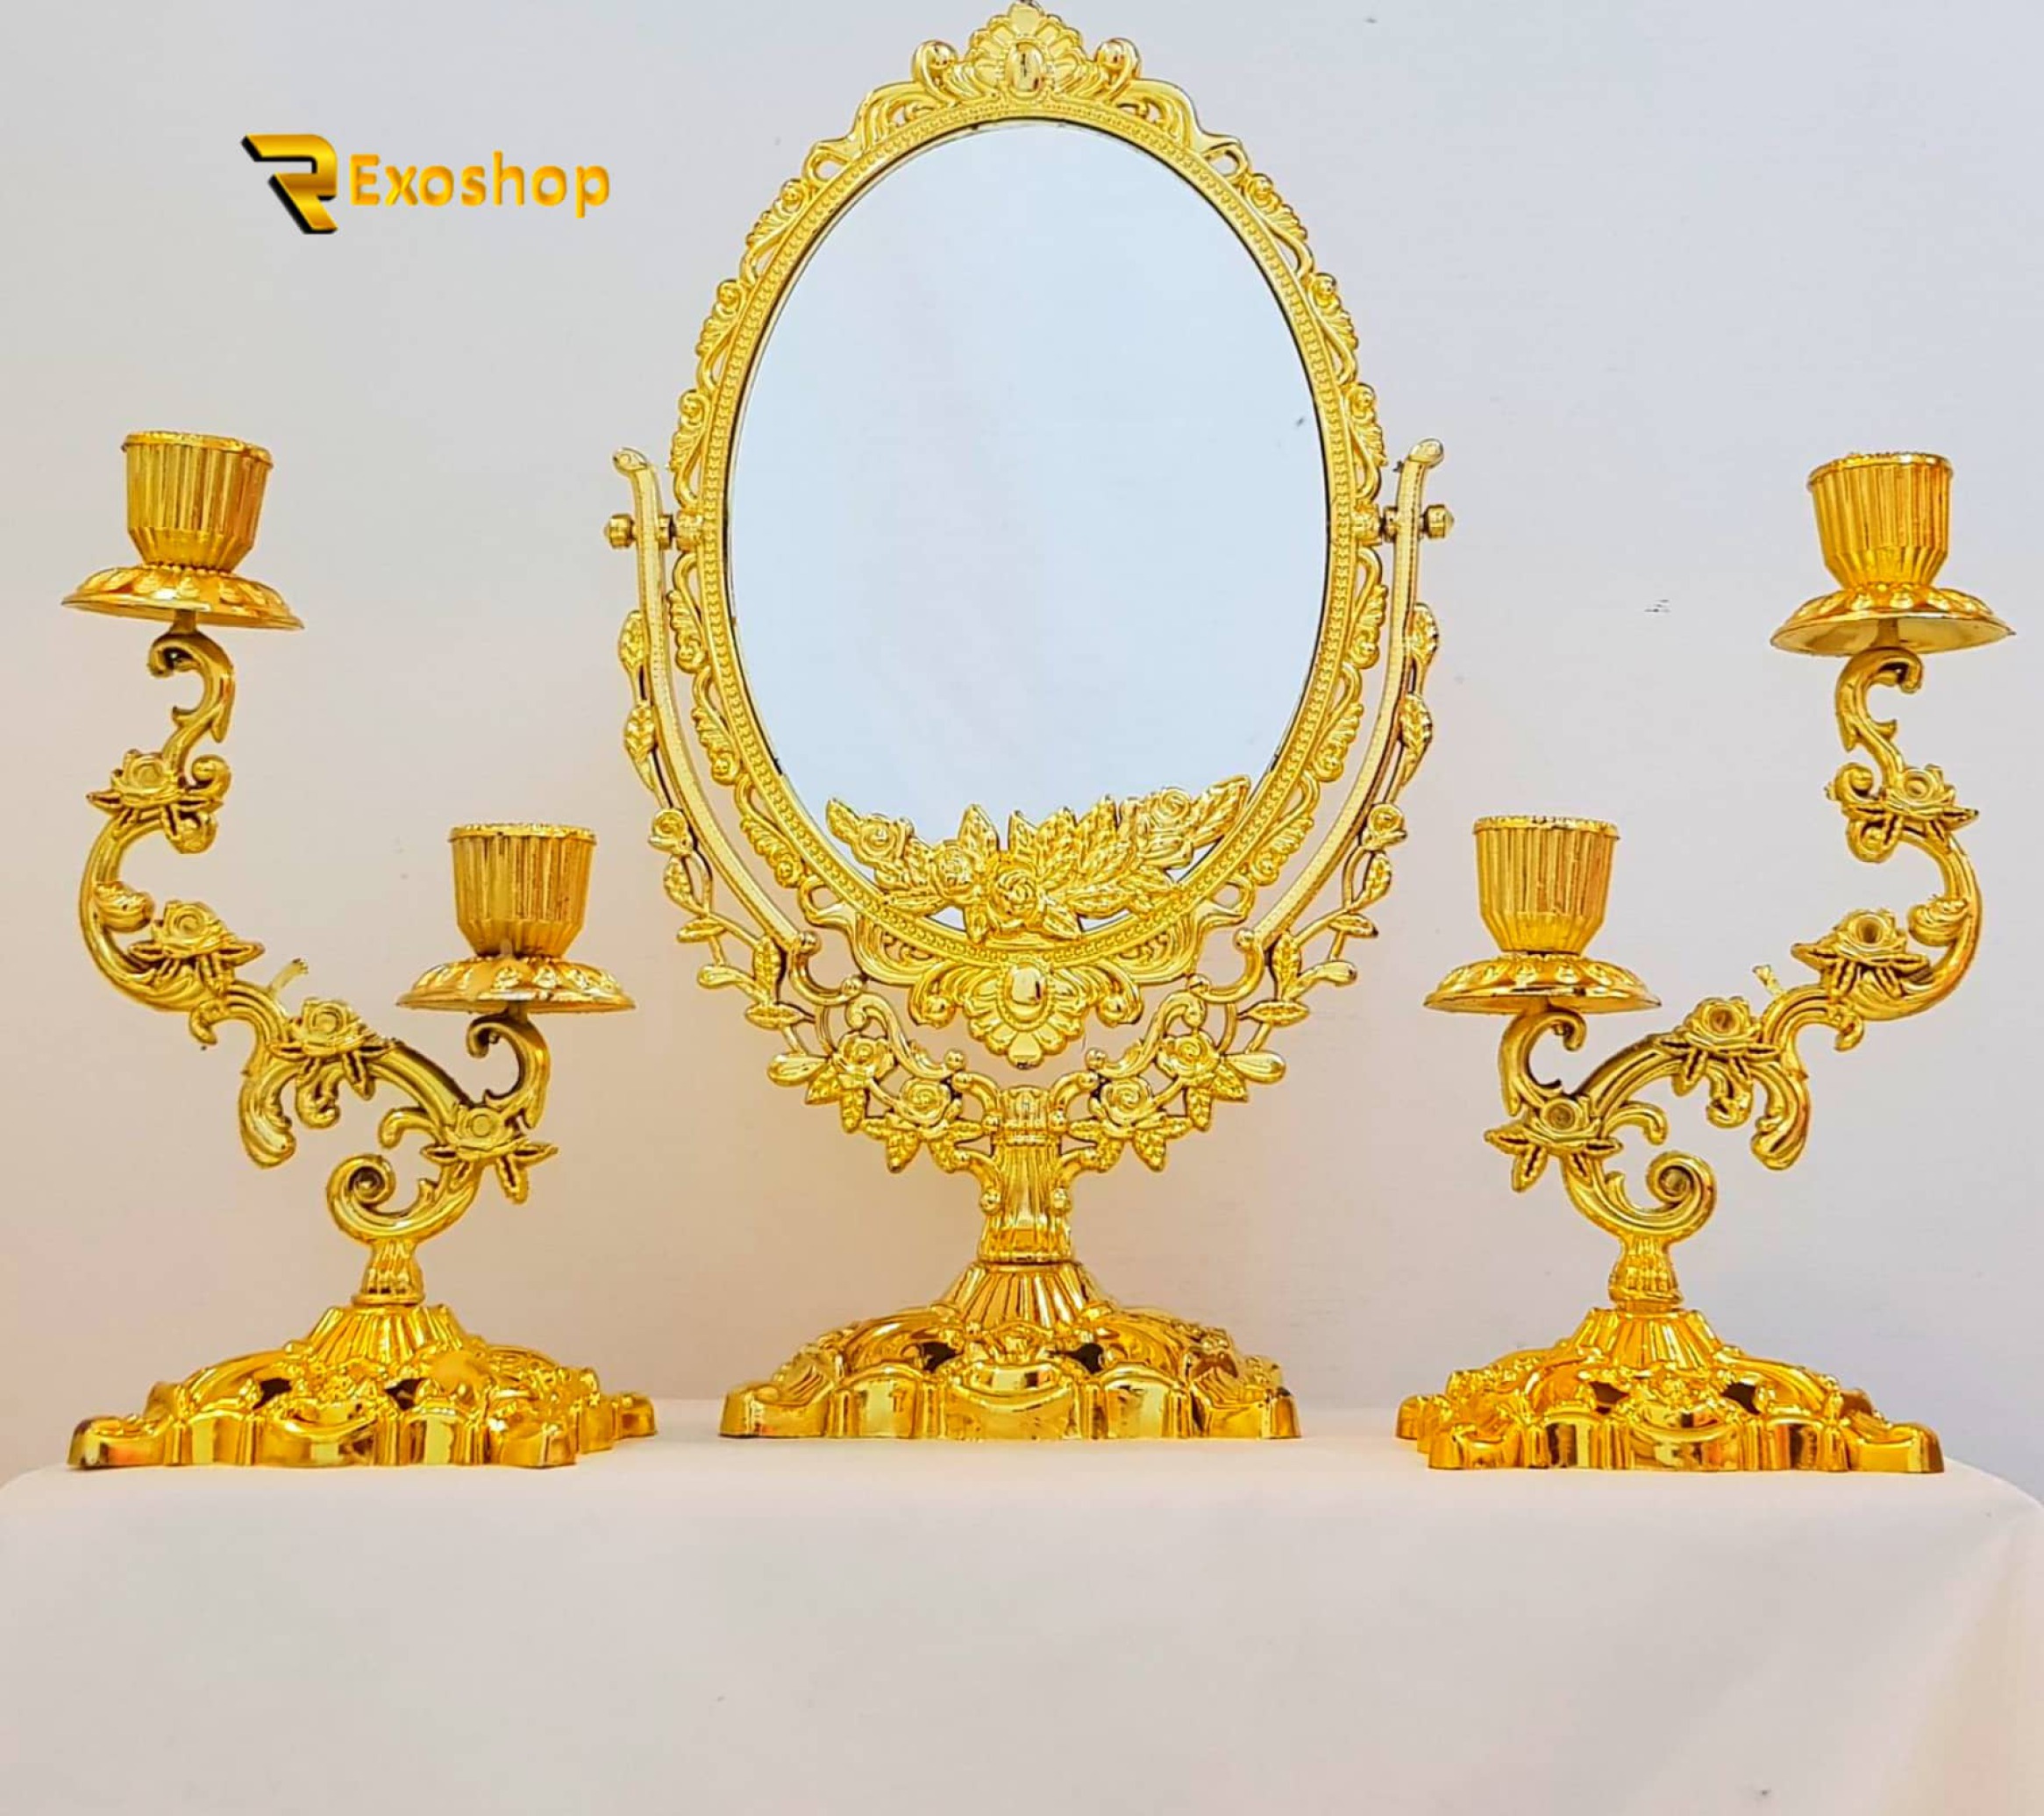  آینه شمعدان طرح هفت سین مدل یاقوت به همراه رحل قرآن یکی از بهترین آینه شمعدان است که با قیمتی ارزان در رکسوشاپ موجود است 